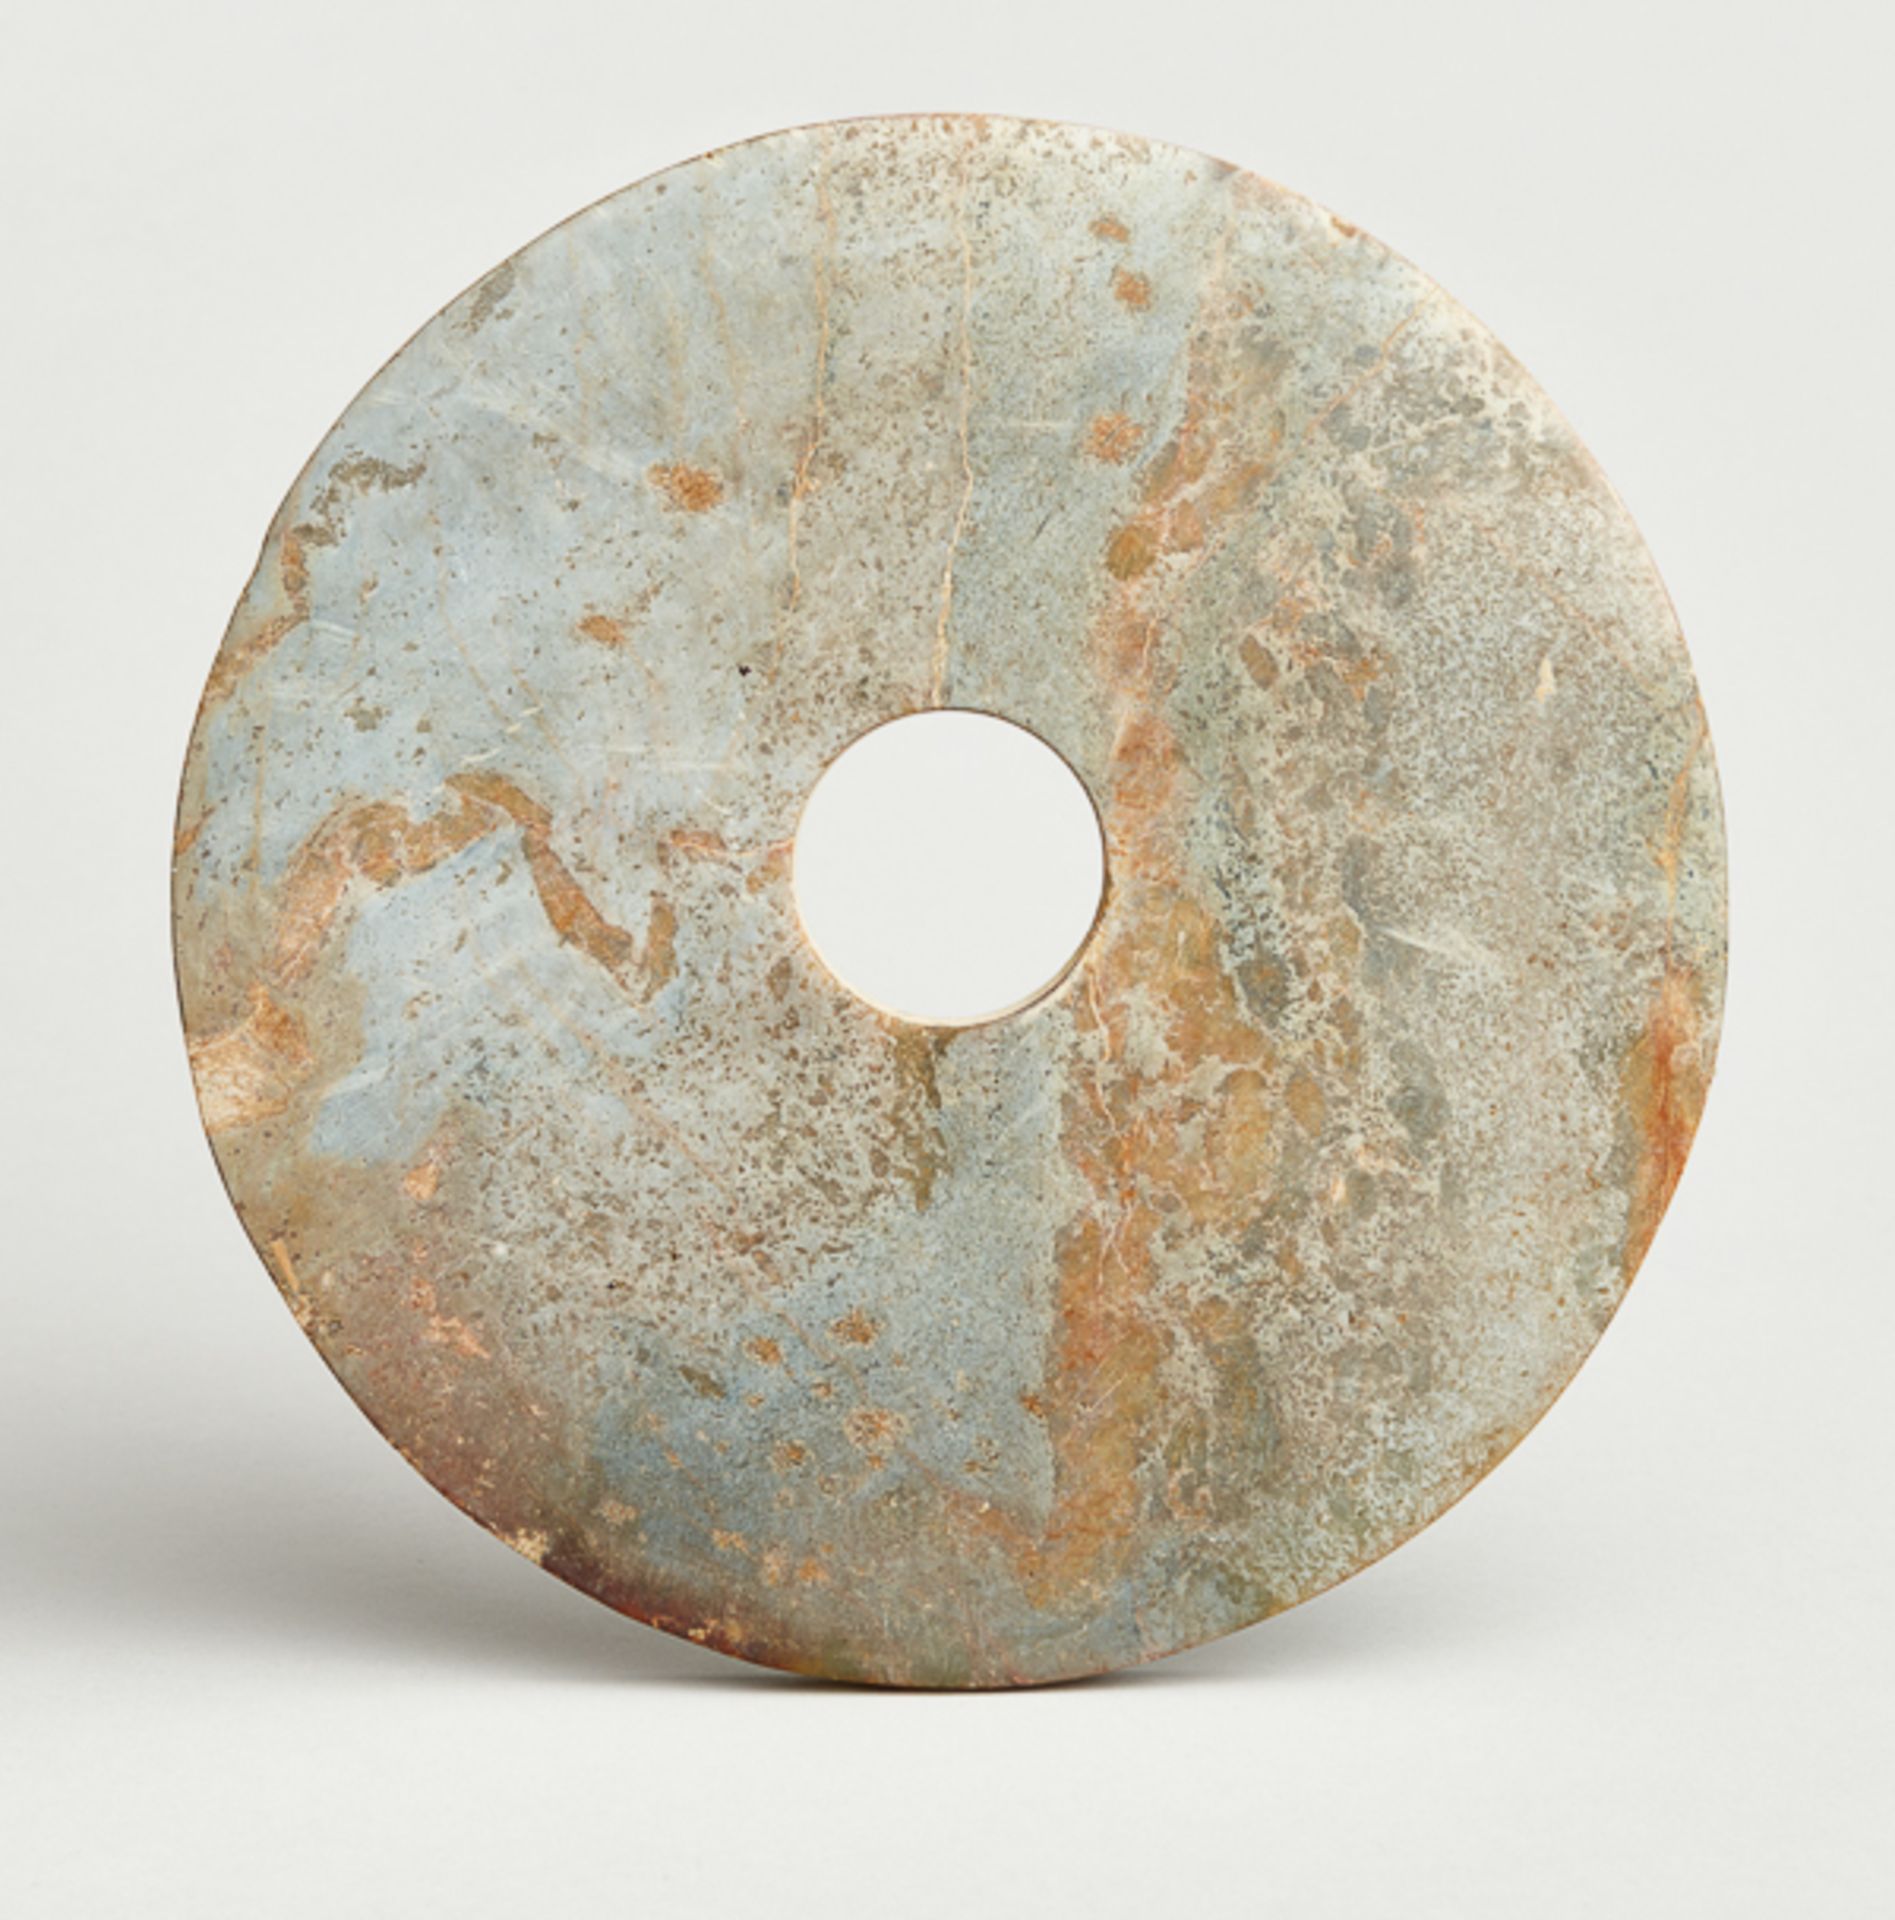 GROSSE SCHEIBE BI Jade. China, vermutl. neolithische Liangzhu-Kultur (ca. 3300 - 2200 vor)